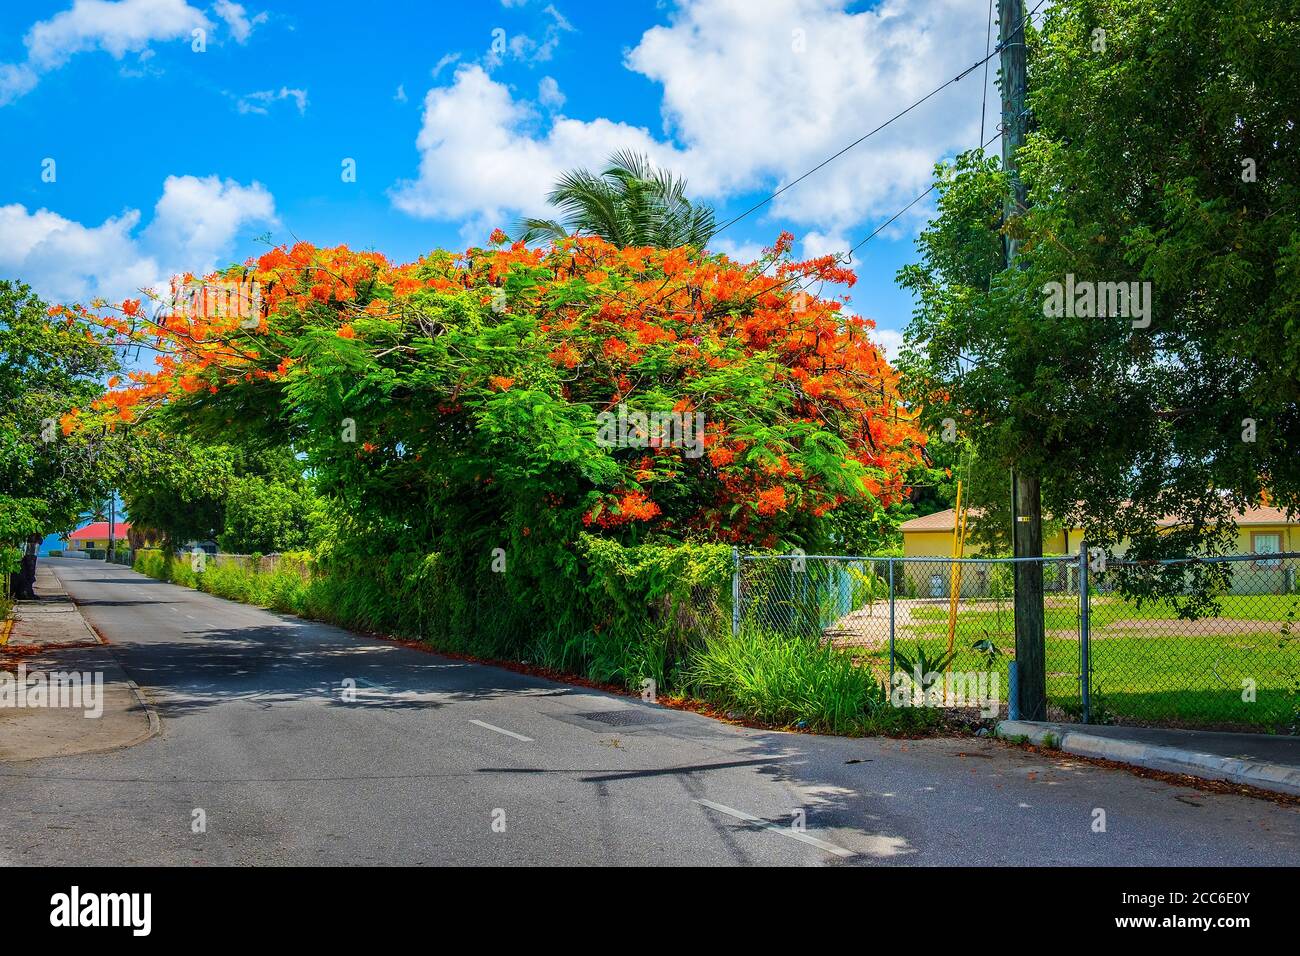 Poinciana arbre en fleur au bord de la route sur une rue de George Town, Grand Cayman Banque D'Images